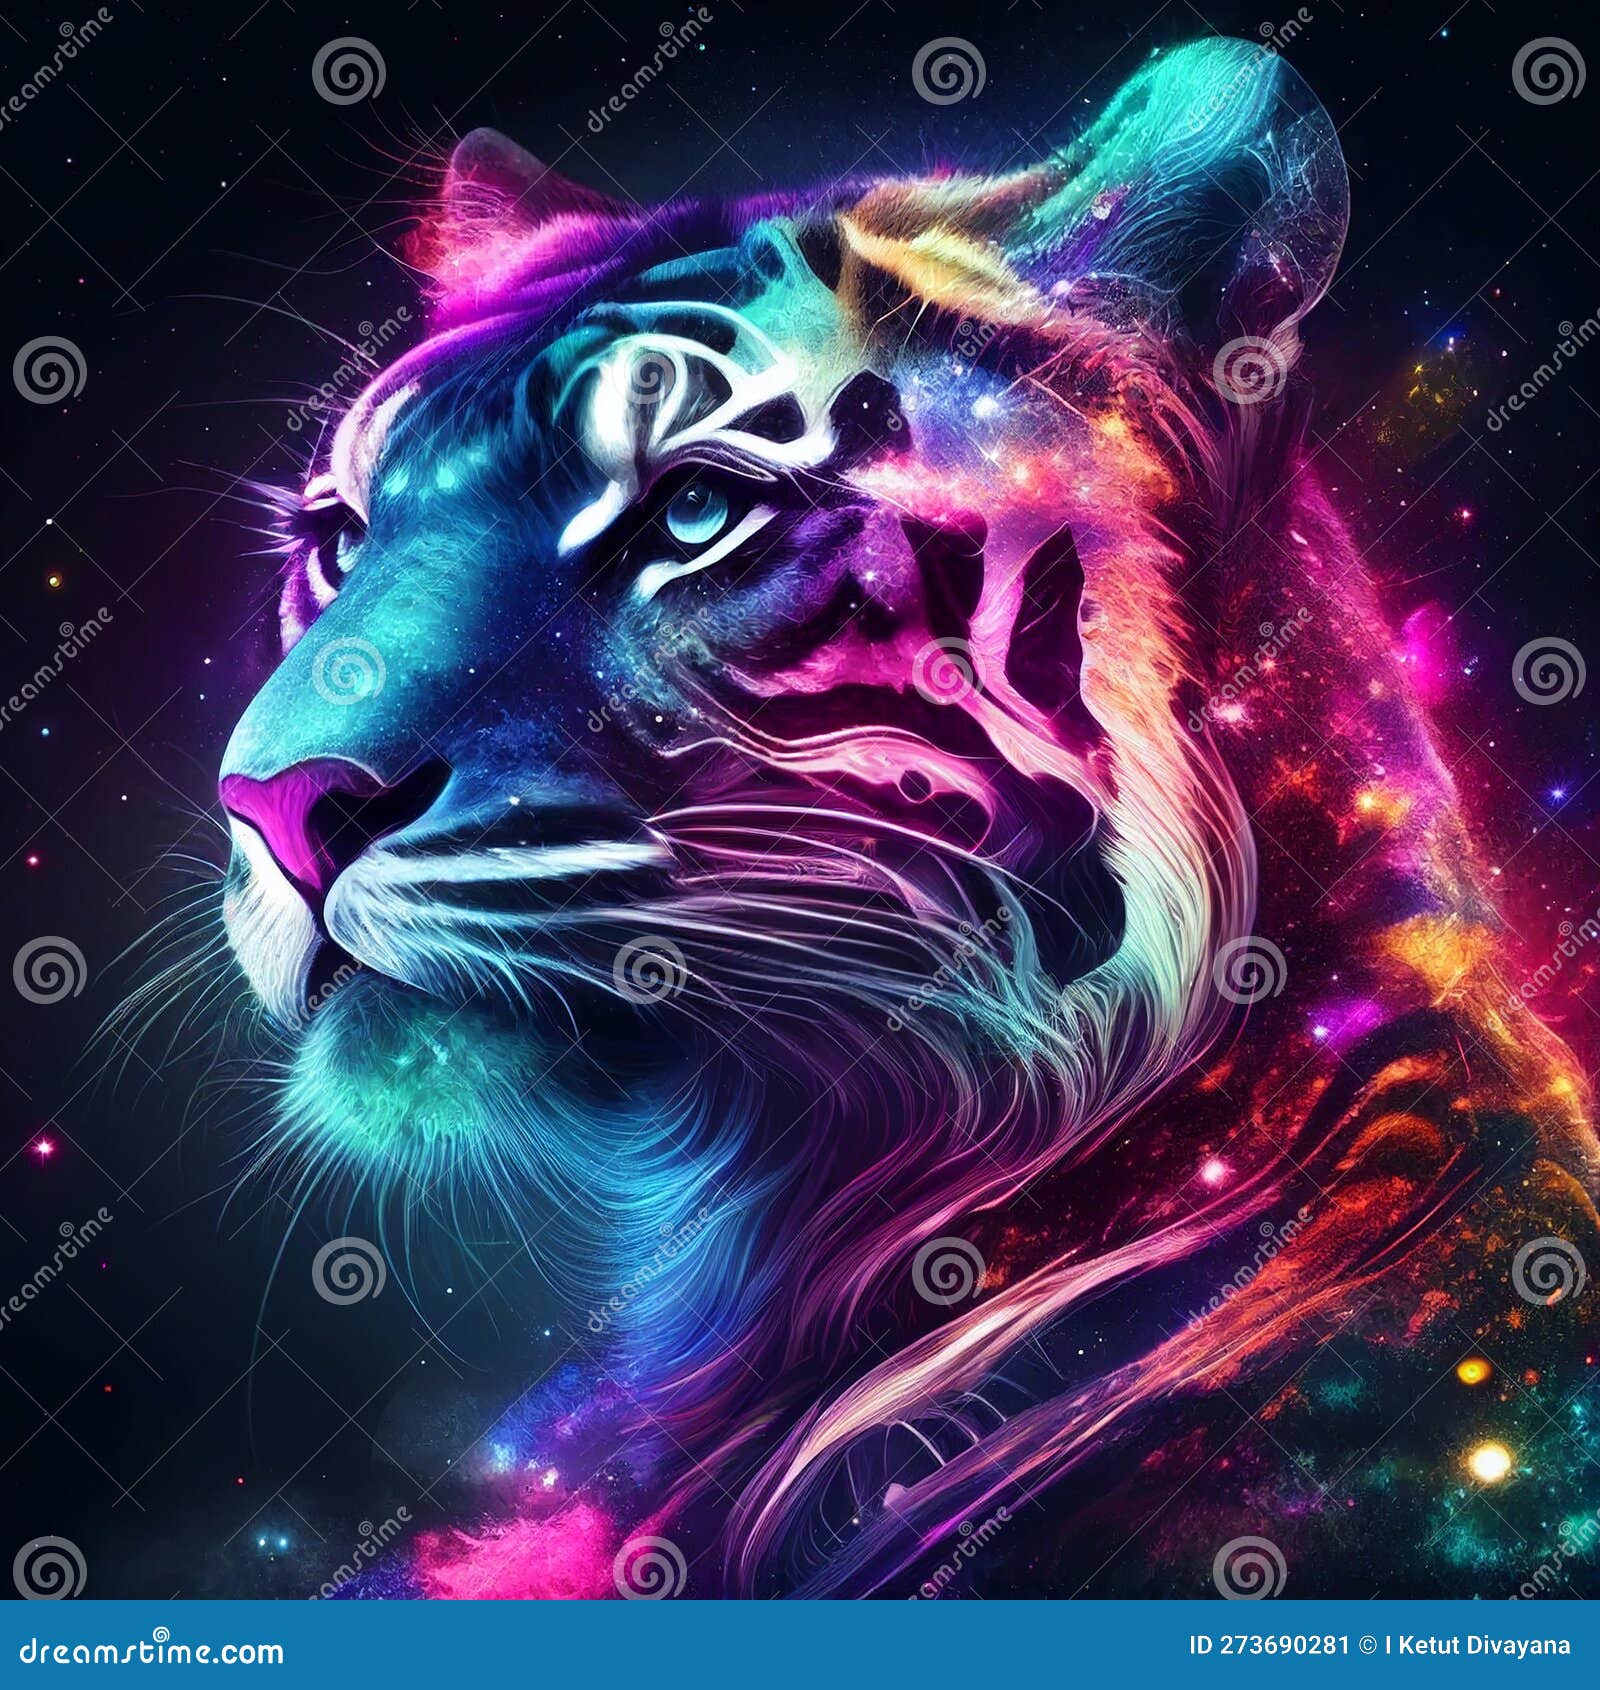 HD purple tiger wallpapers  Peakpx